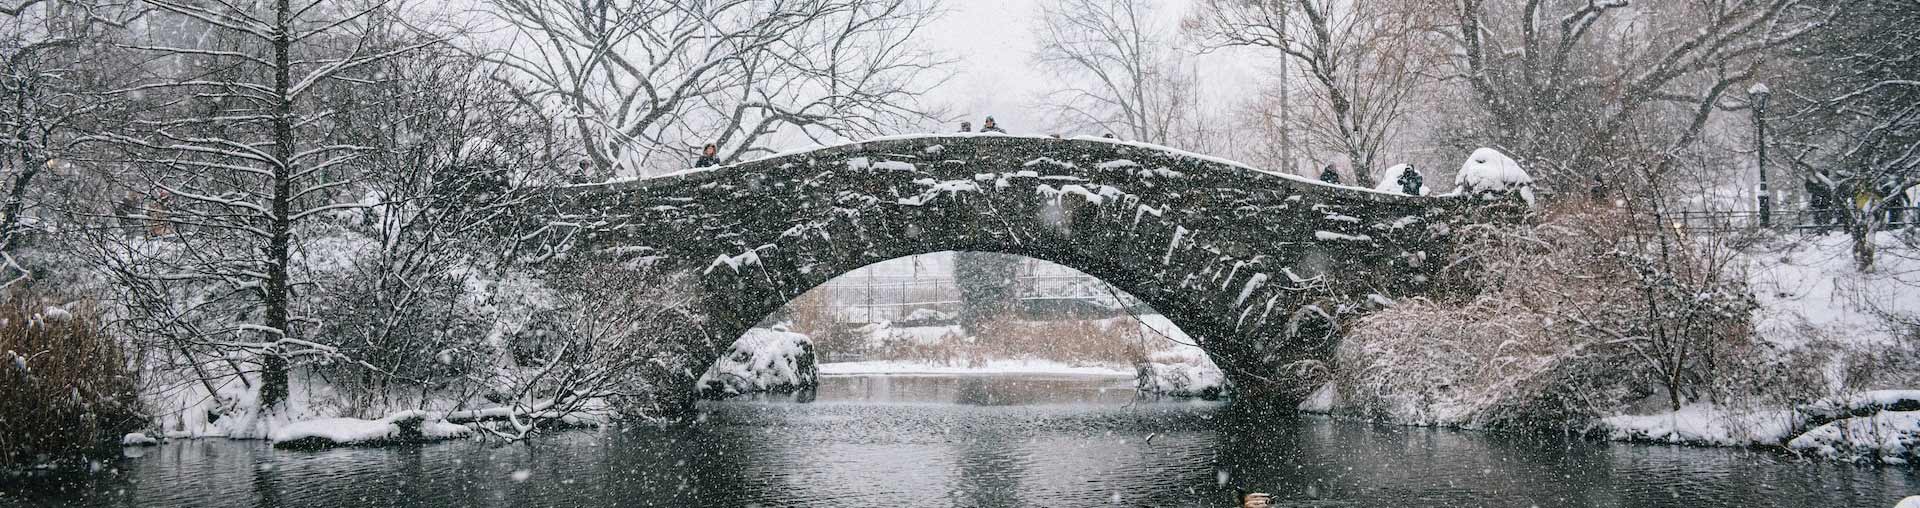 Công viên Trung tâm Thành phố New York tuyết rơi với cây cầu đá ở chế độ nền